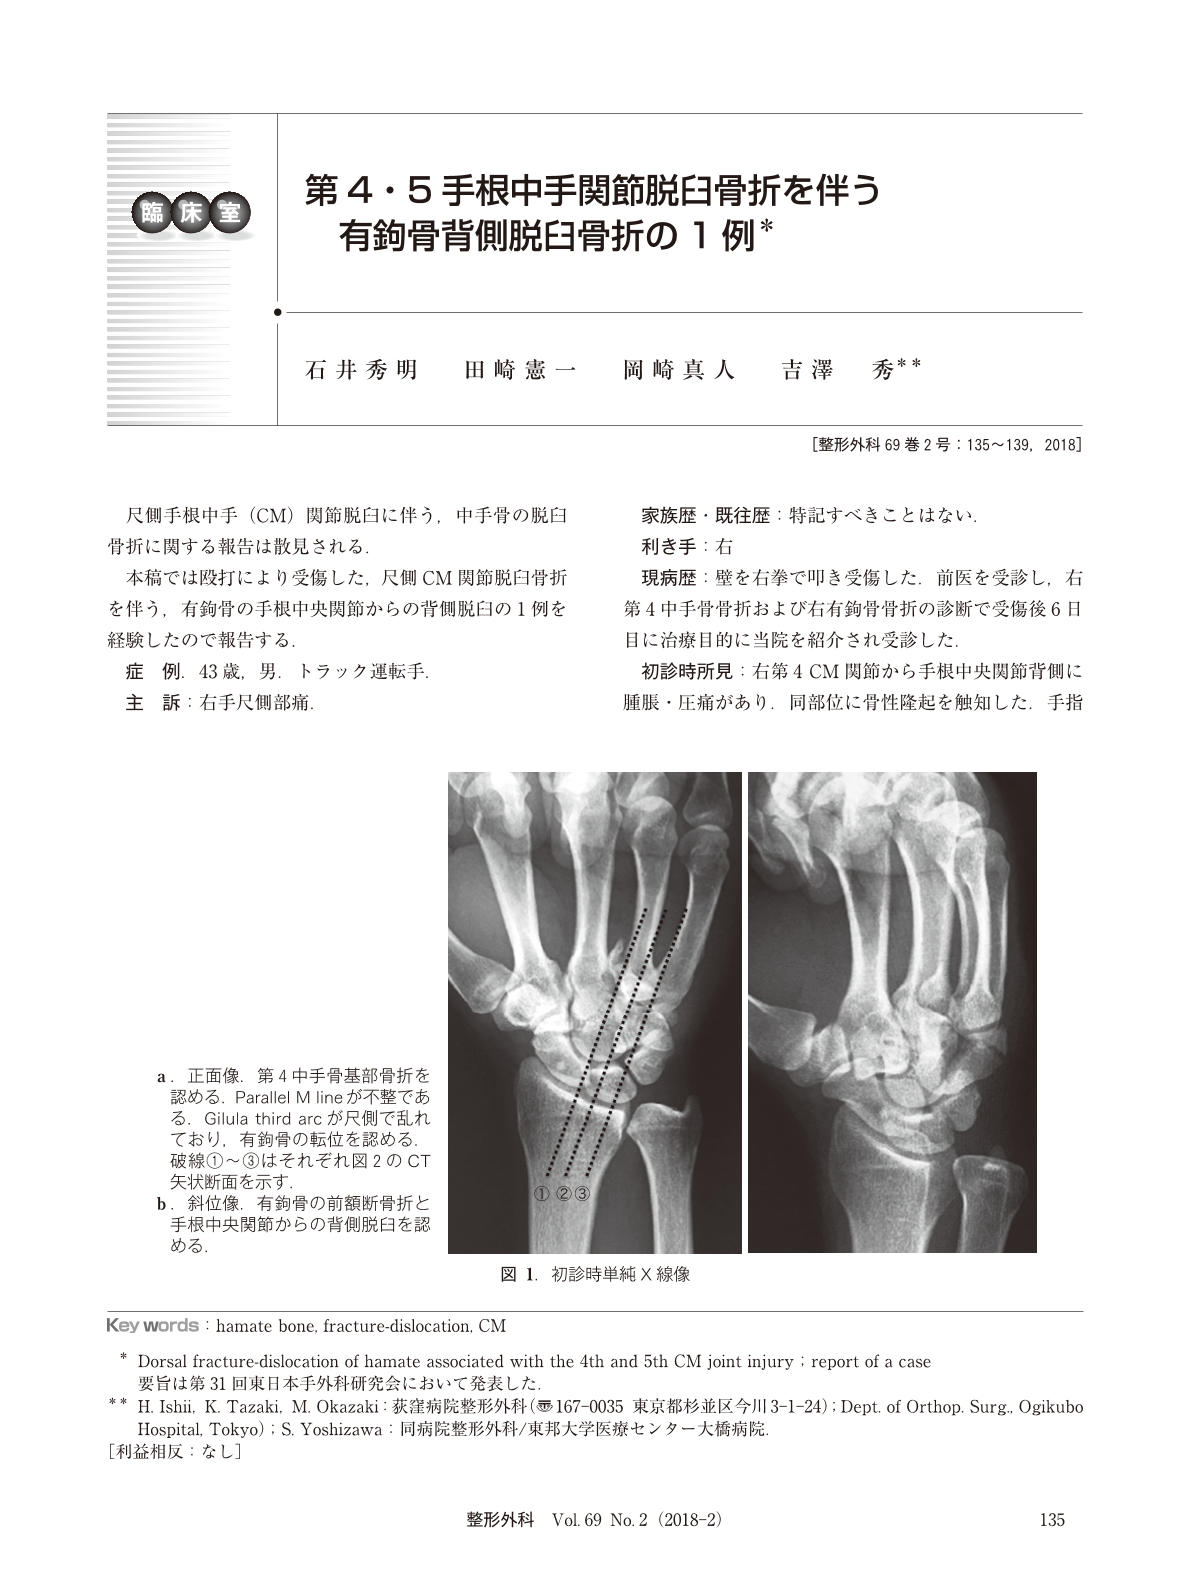 第4・5手根中手関節脱臼骨折を伴う有鉤骨背側脱臼骨折の1例 (臨床雑誌 